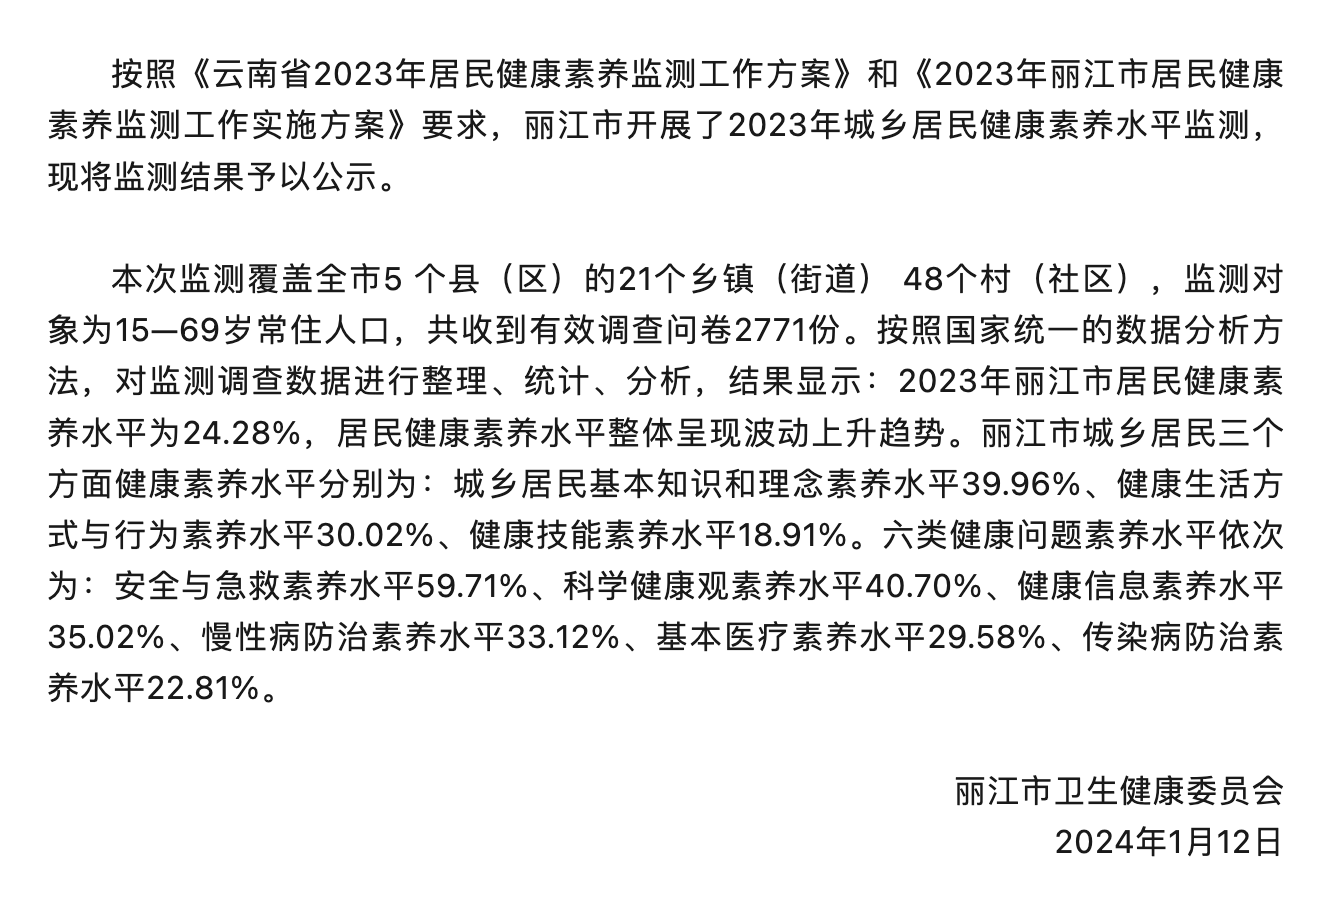 2023年丽江市居民健康素养水平监测结果公布 居民传染病防治素养水平最低.png